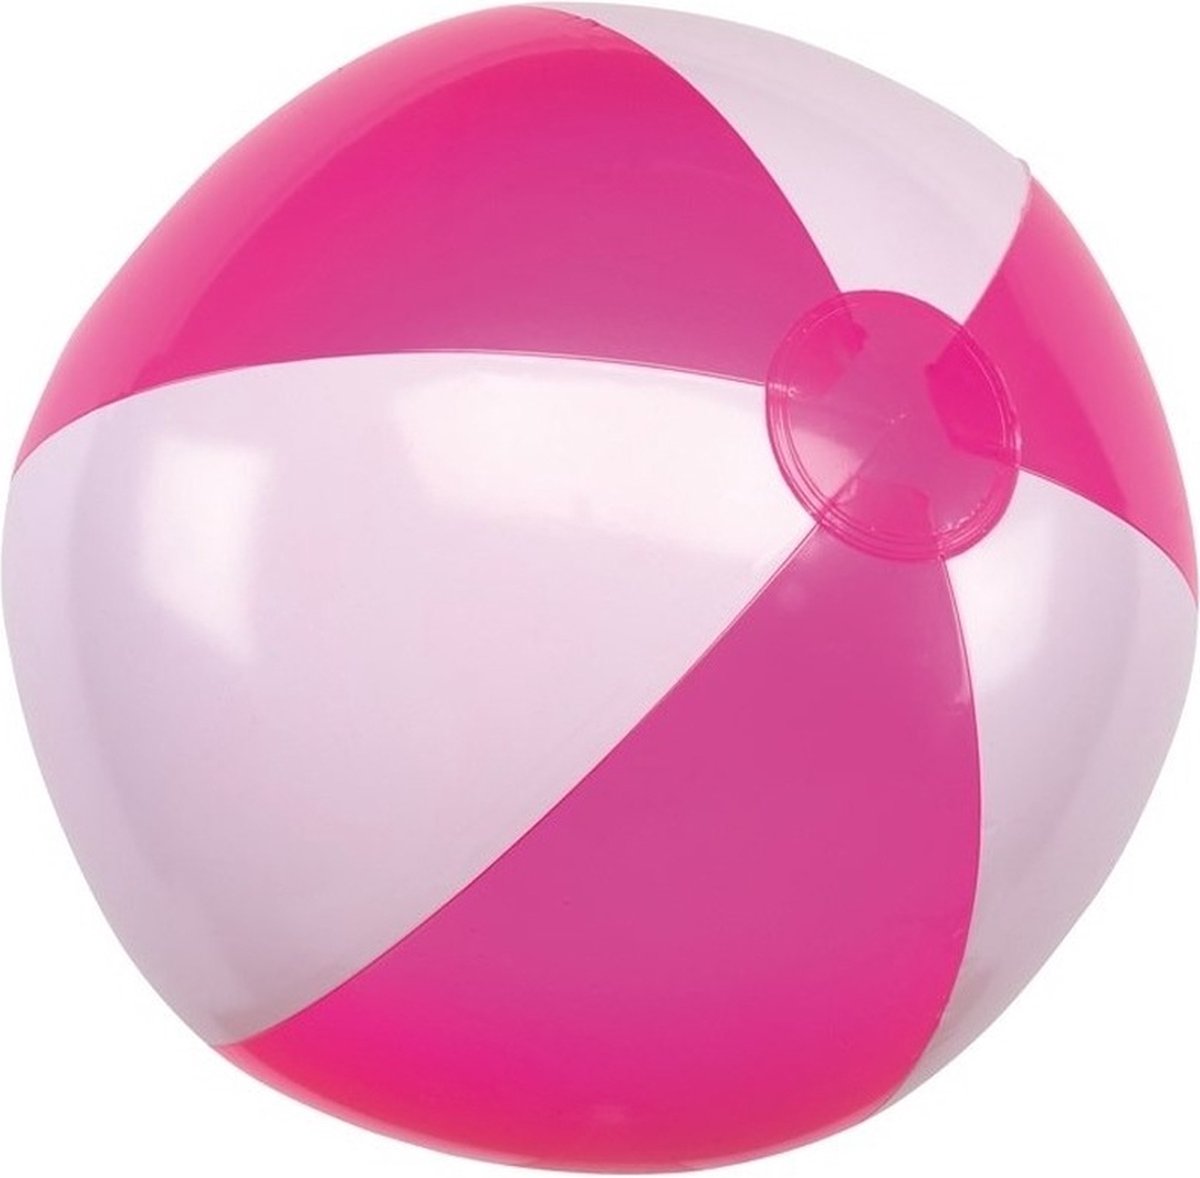 1x Opblaasbare strandbal roze/wit 28 cm speelgoed - Buitenspeelgoed strandballen - Opblaasballen - Waterspeelgoed